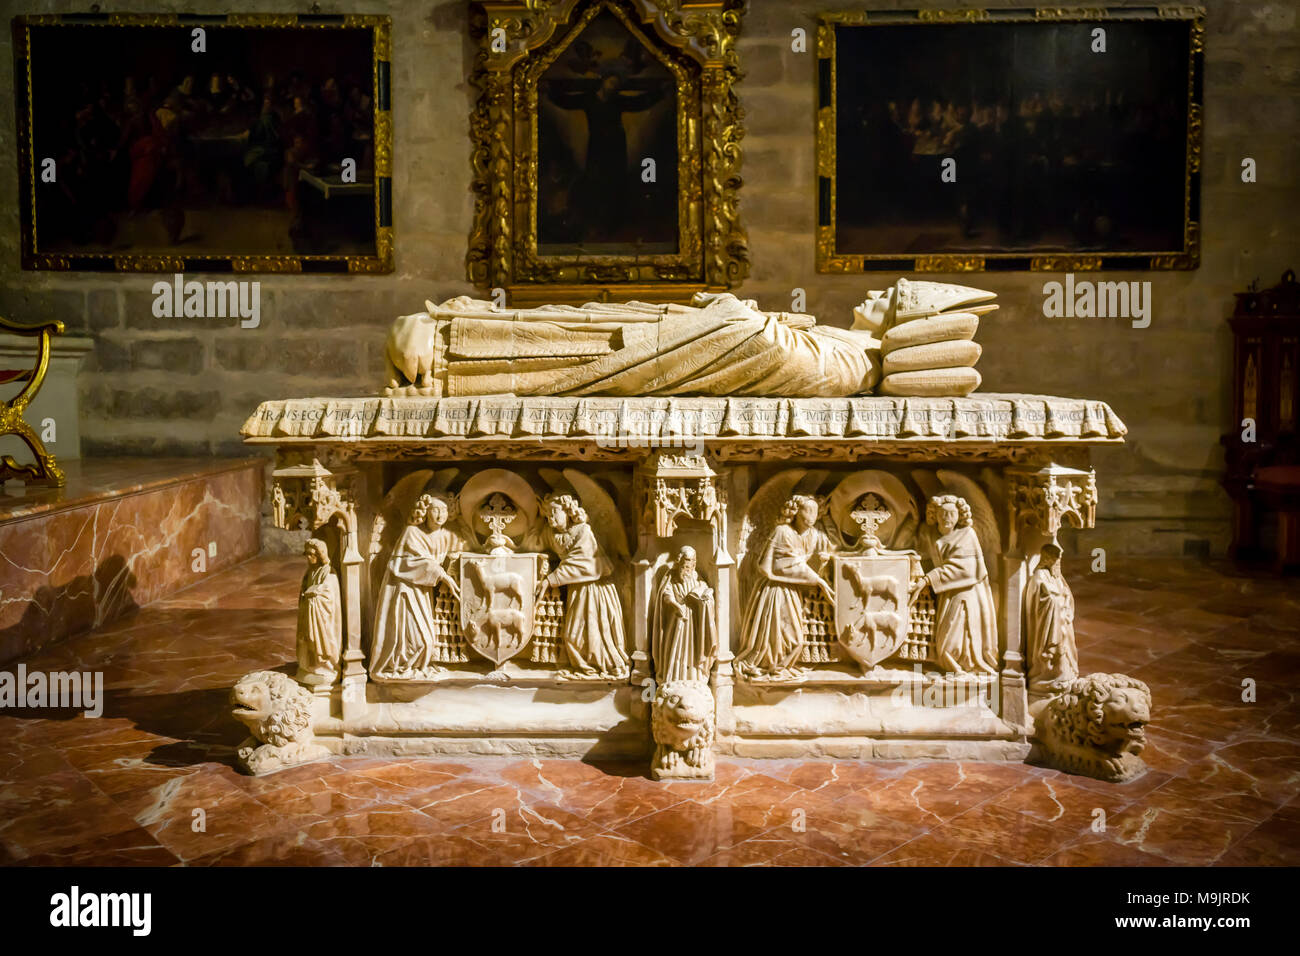 La tumba del Cardenal Juan de Cervantes y Bocanegra - Catedral de Sevilla (Catedral de Santa María de la Sede) - Sevilla, Andalucía, España Foto de stock